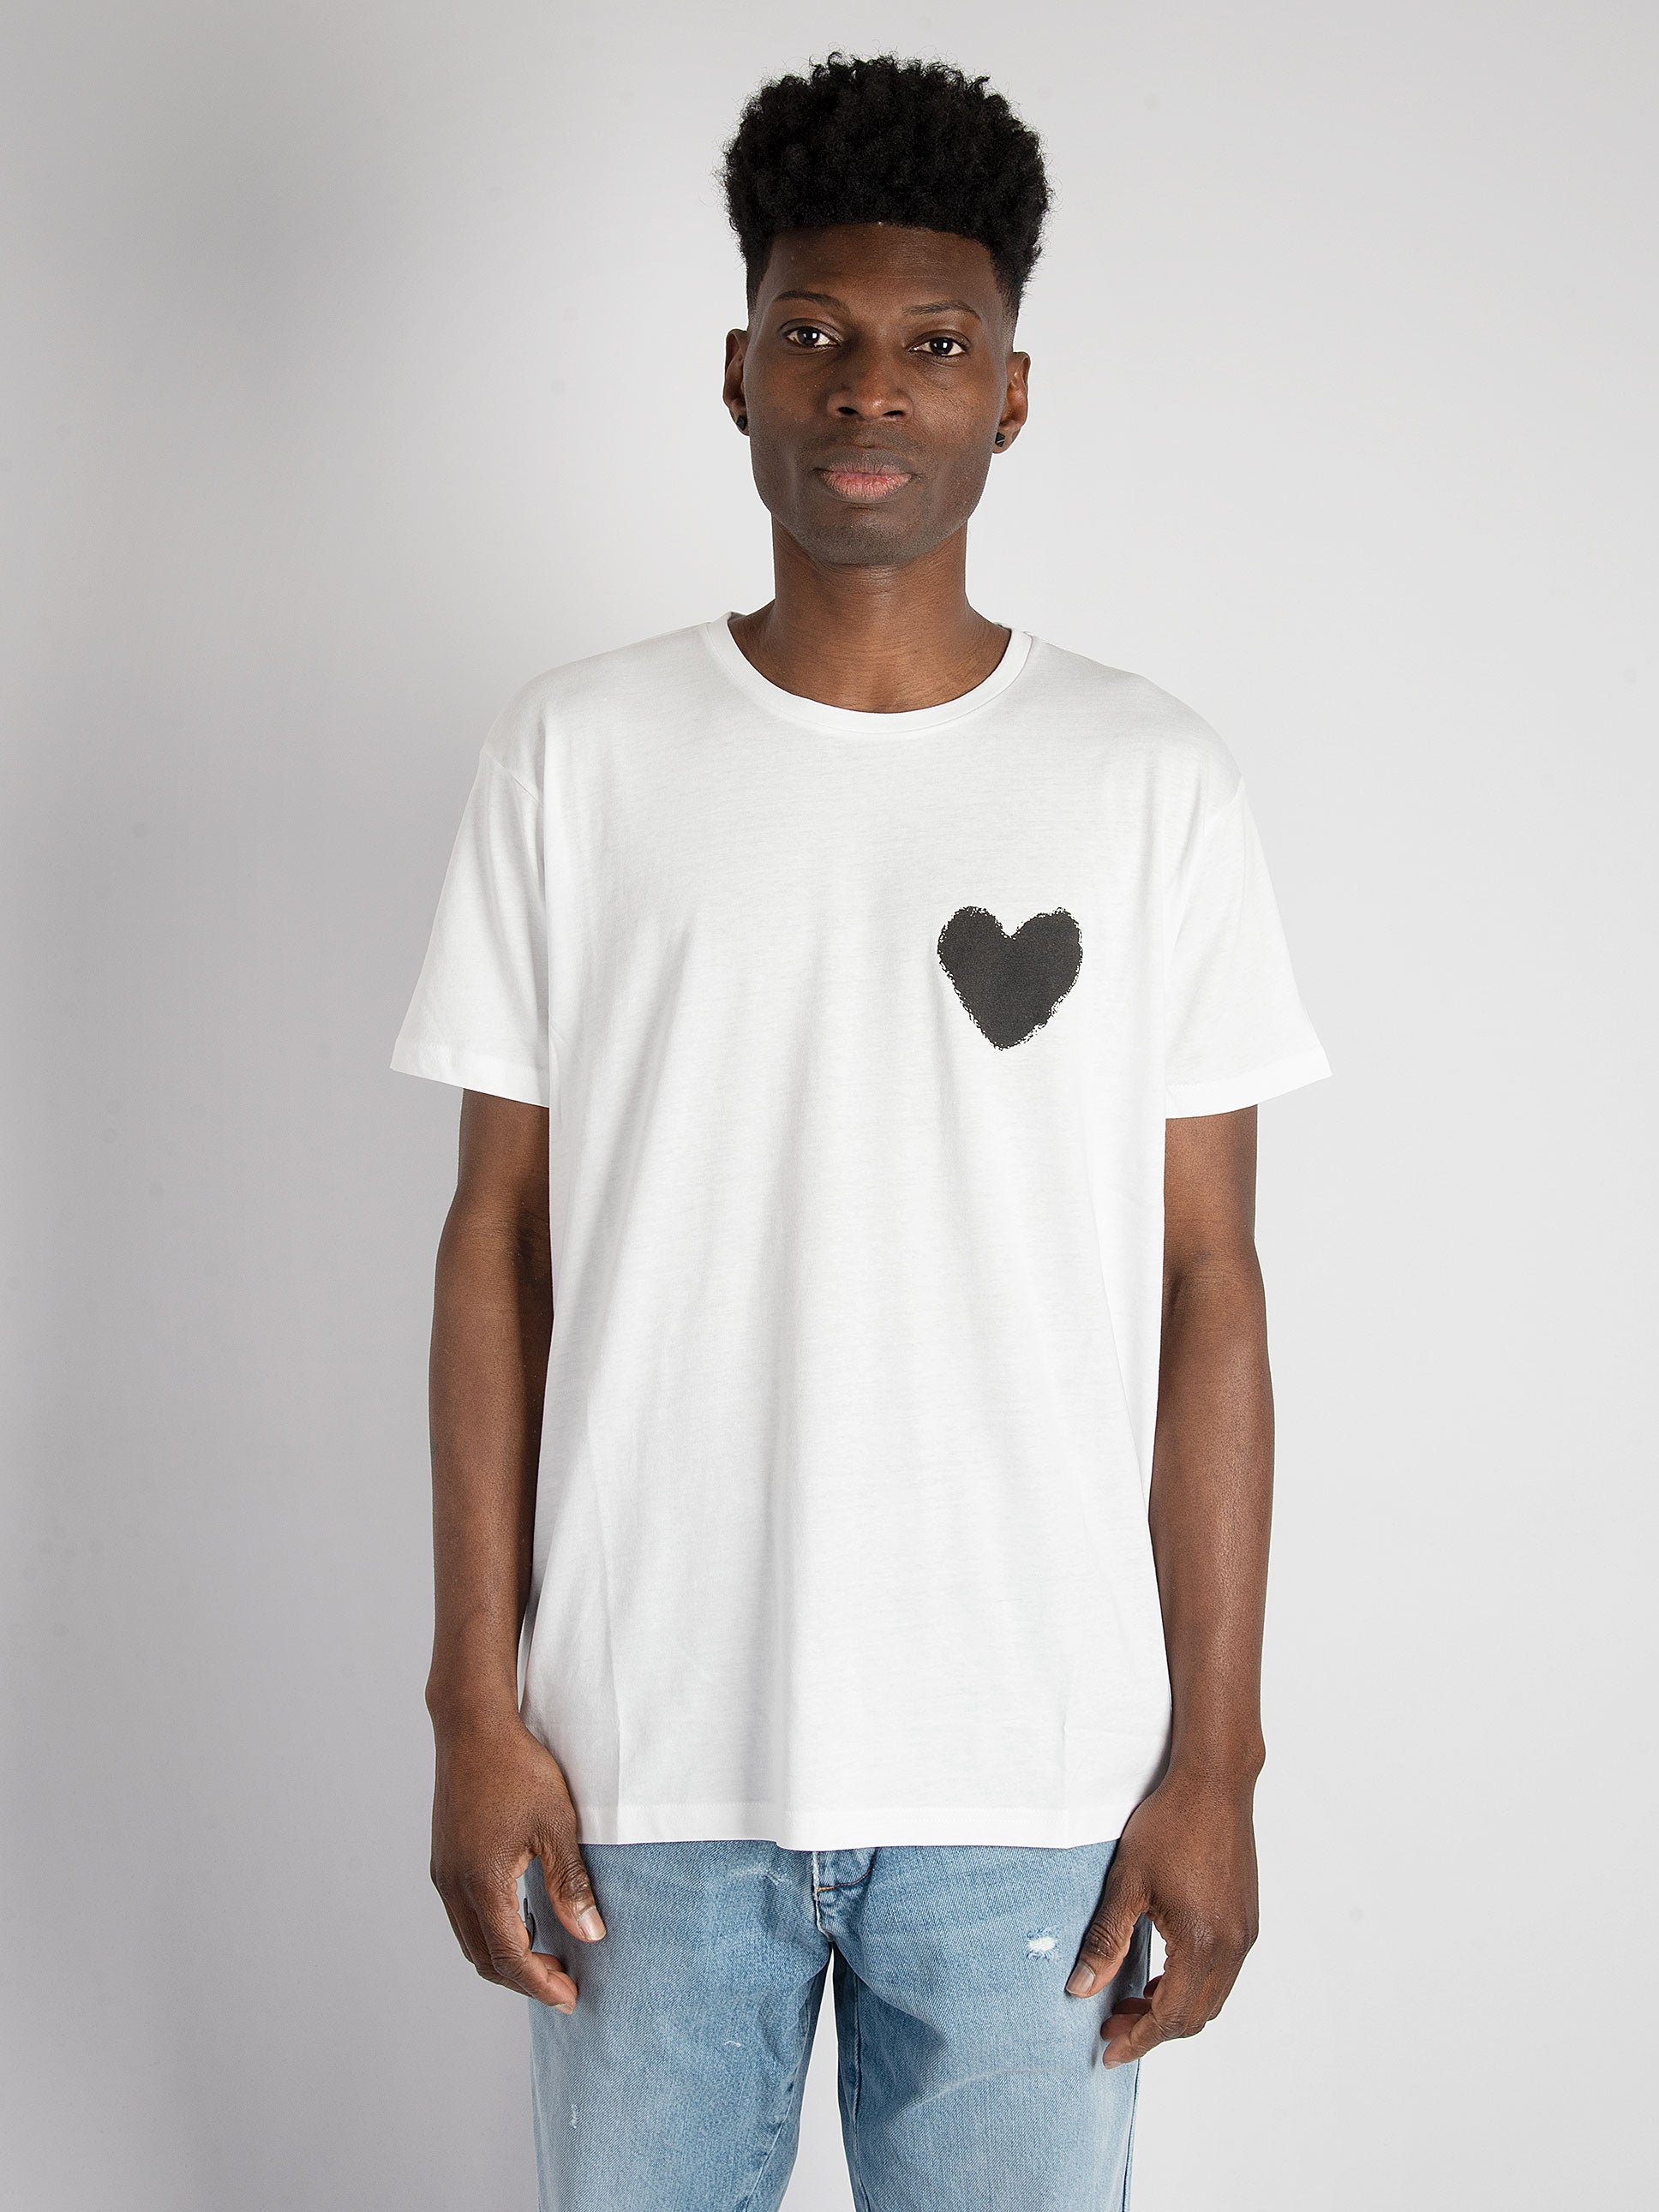 T-Shirt Inspire Heart - Bianco/Nero